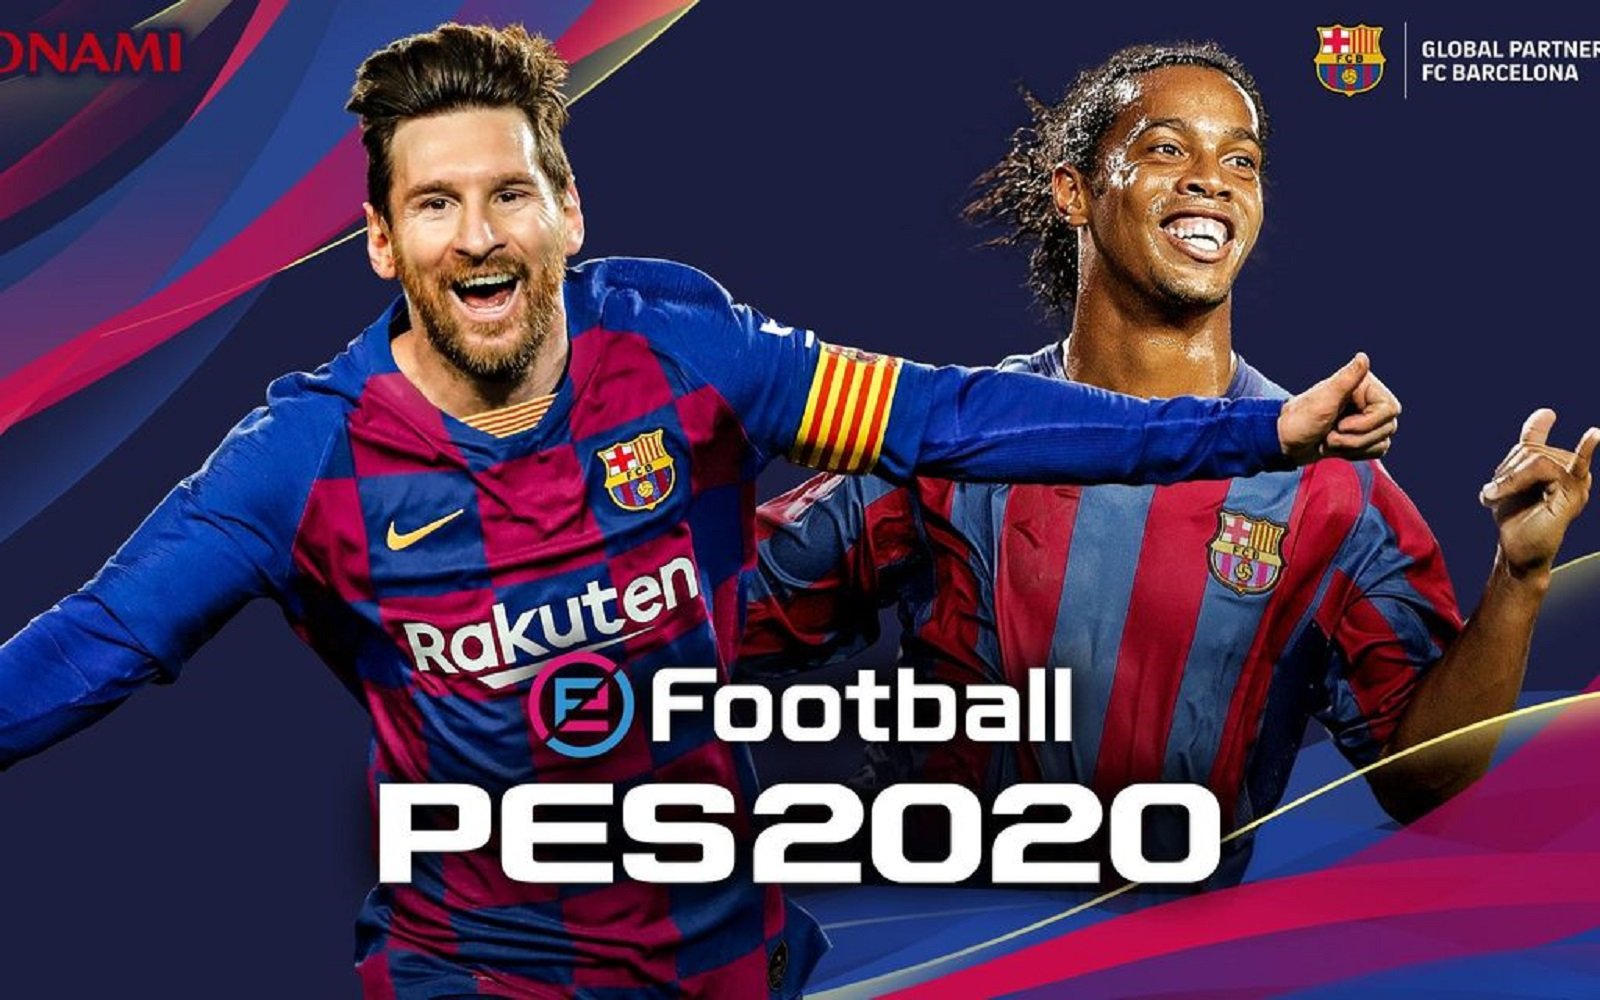 El PES 2020 se presenta con Messi de protagonista